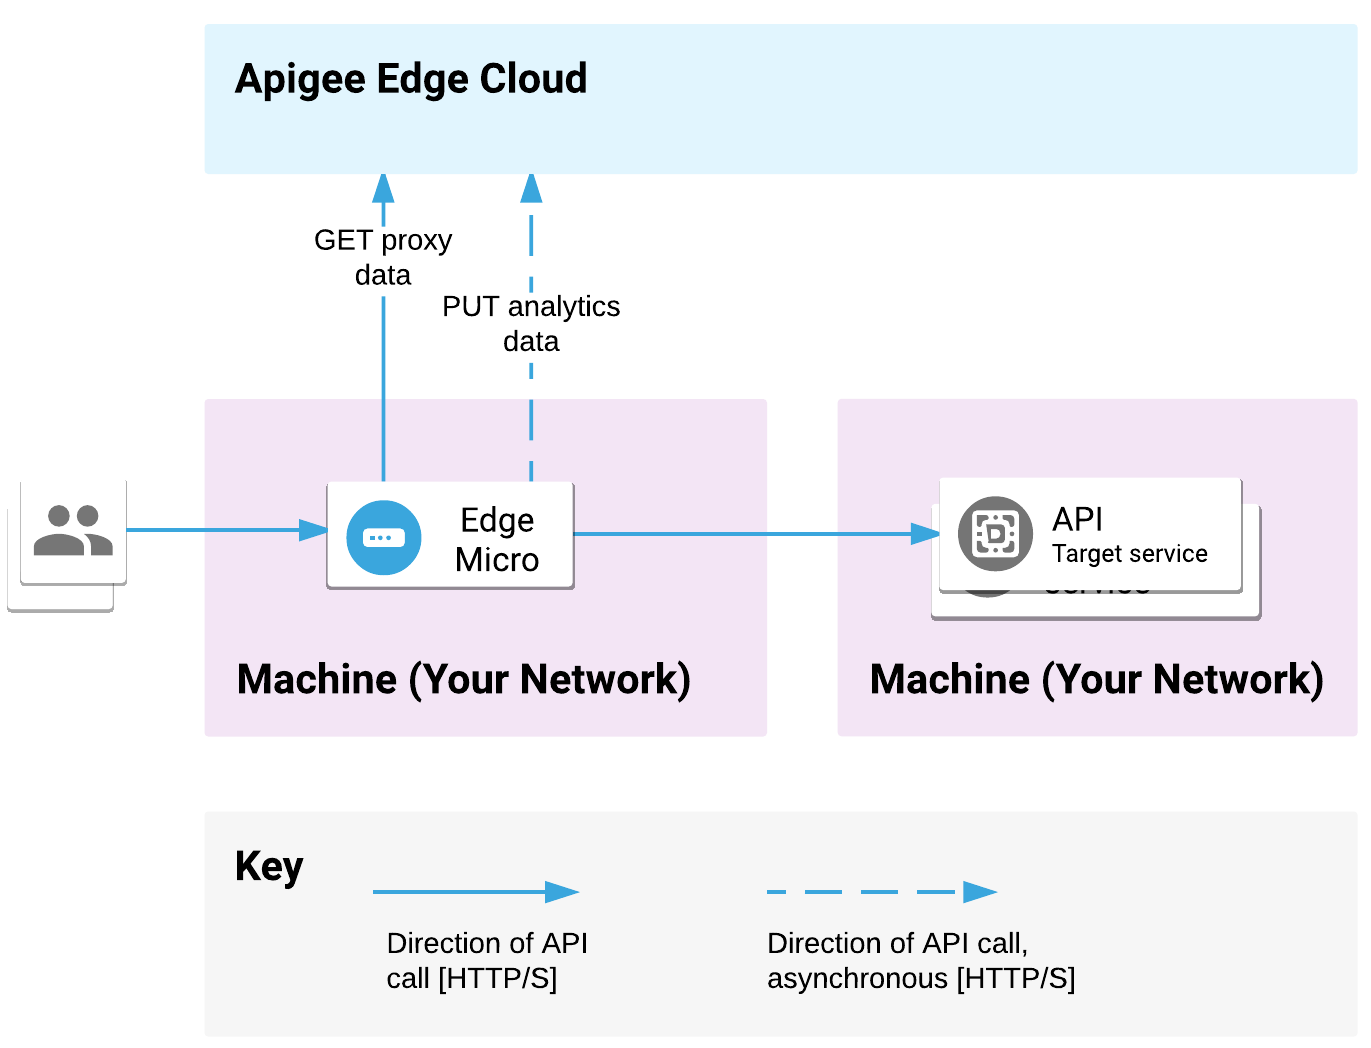 Edge Microgateway bergantung pada satu mesin, dan layanan backend
             di-deploy di lokasi lain. Permintaan API diproses oleh microgateway dan permintaan dikirim ke target backend. Microgateway mengomunikasikan data
             analisis dan proxy dengan Apigee Edge Cloud.